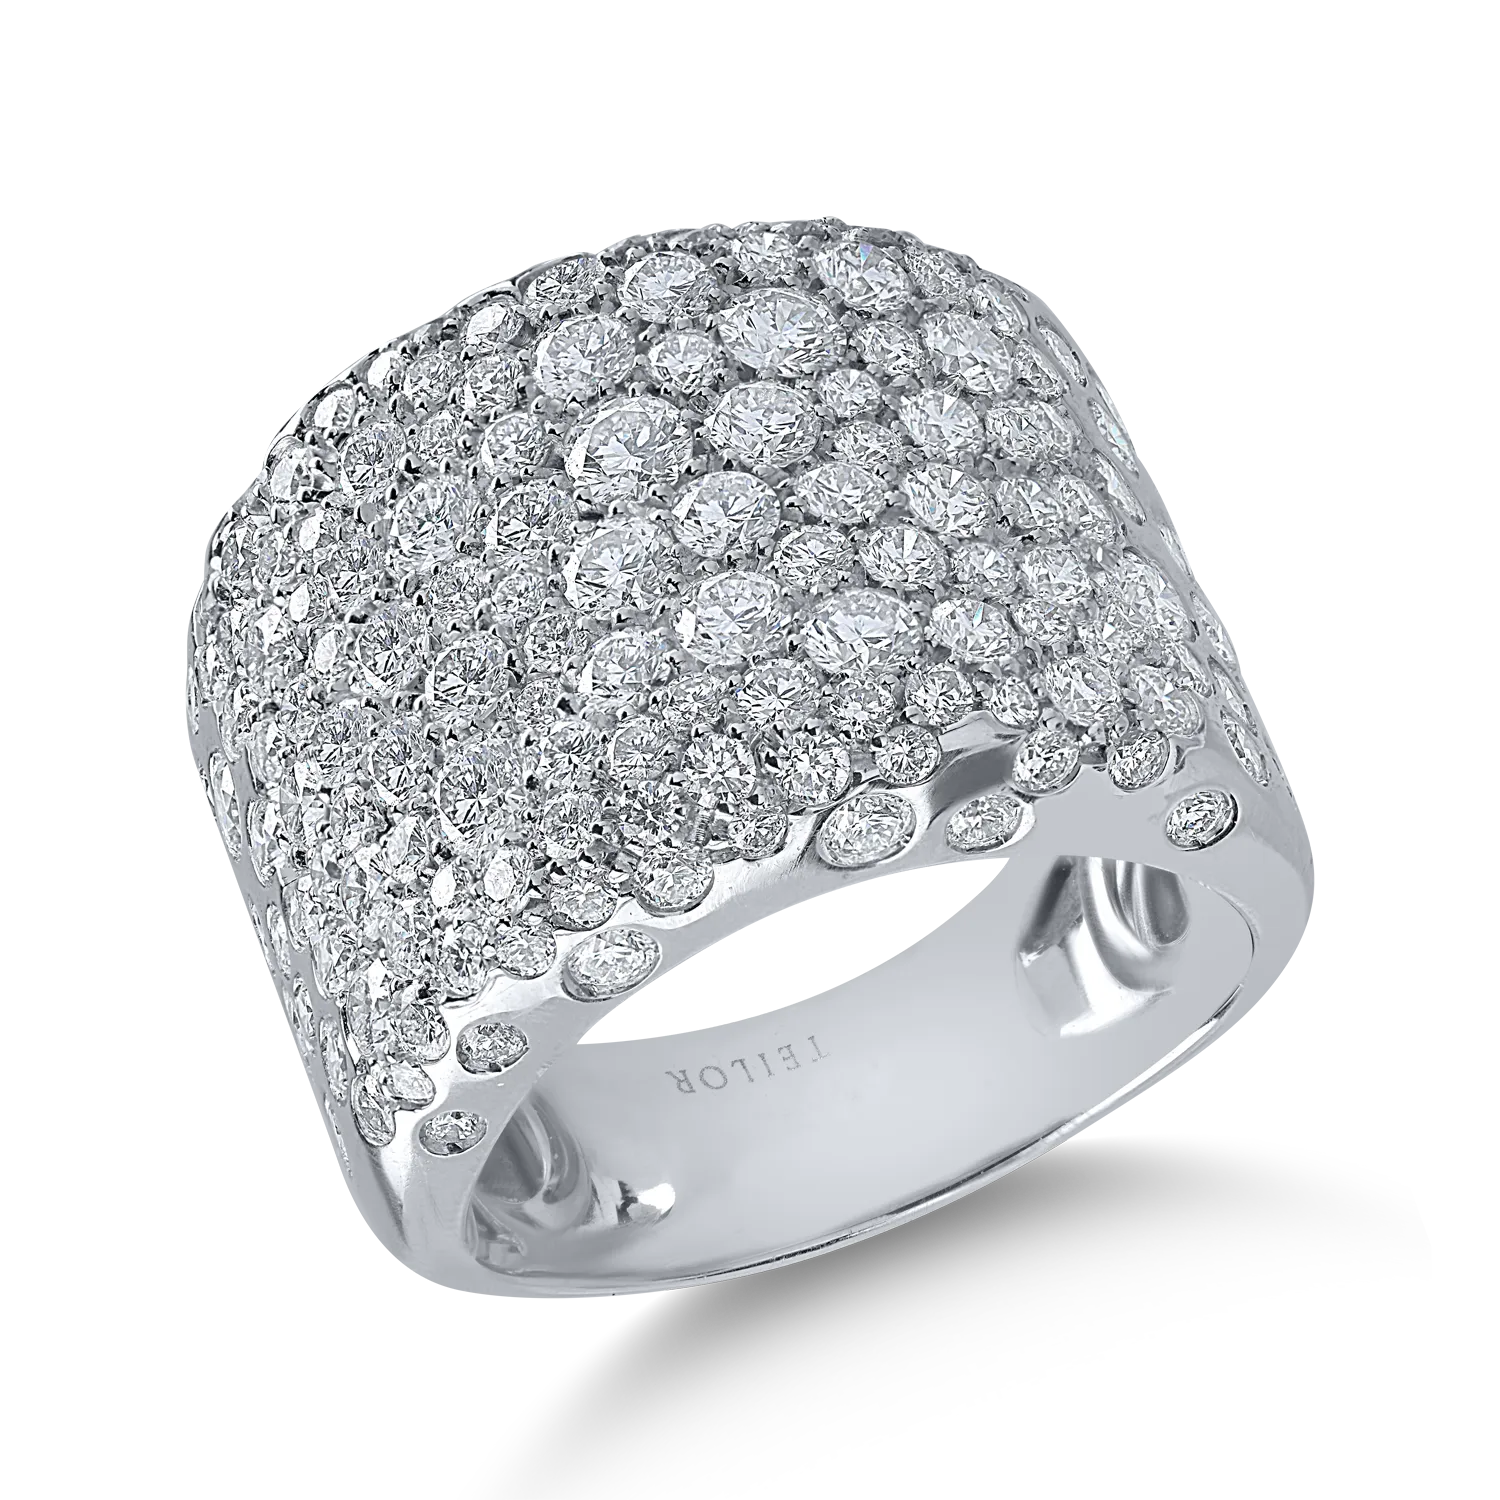 Fehérarany gyűrű 3.62ct gyémántokkal